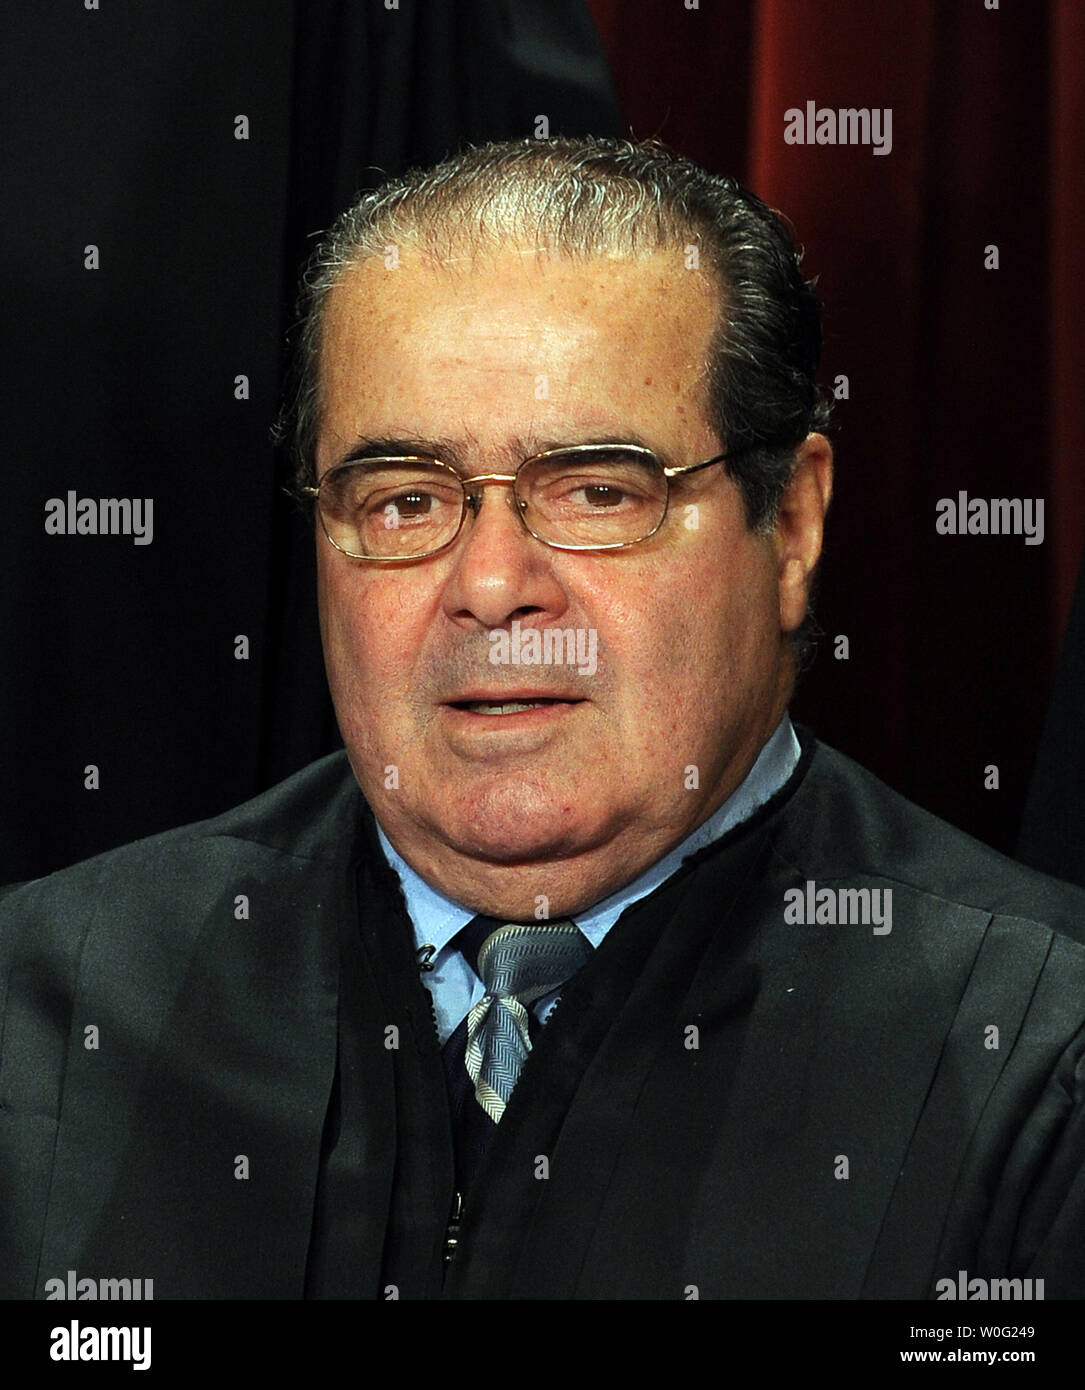 Associate Antonin Scalia und der Richter des Supreme Court der Vereinigten Staaten sitzen für eine formelle Gruppe Foto im Osten Konferenzraum der Oberste Gerichtshof in Washington am 8. Oktober 2010. UPI/Roger L. Wollenberg Stockfoto